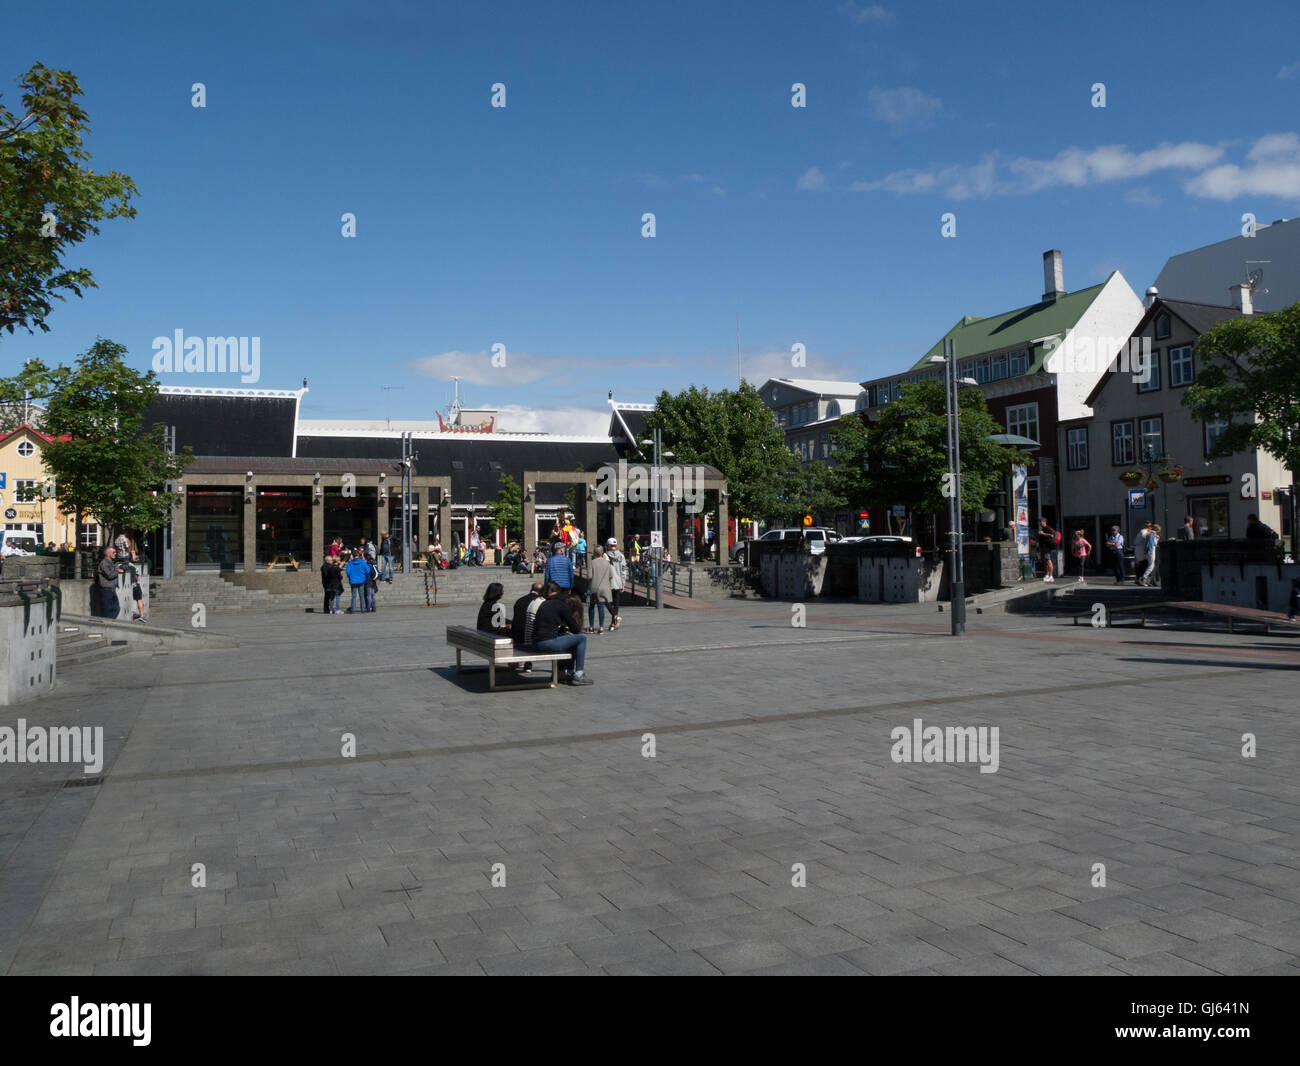 Plaza Central en el vibrante centro histórico de la ciudad de Reykjavik capital de Islandia concurrida con turistas en un hermoso día de julio los veranos con el cielo azul Foto de stock